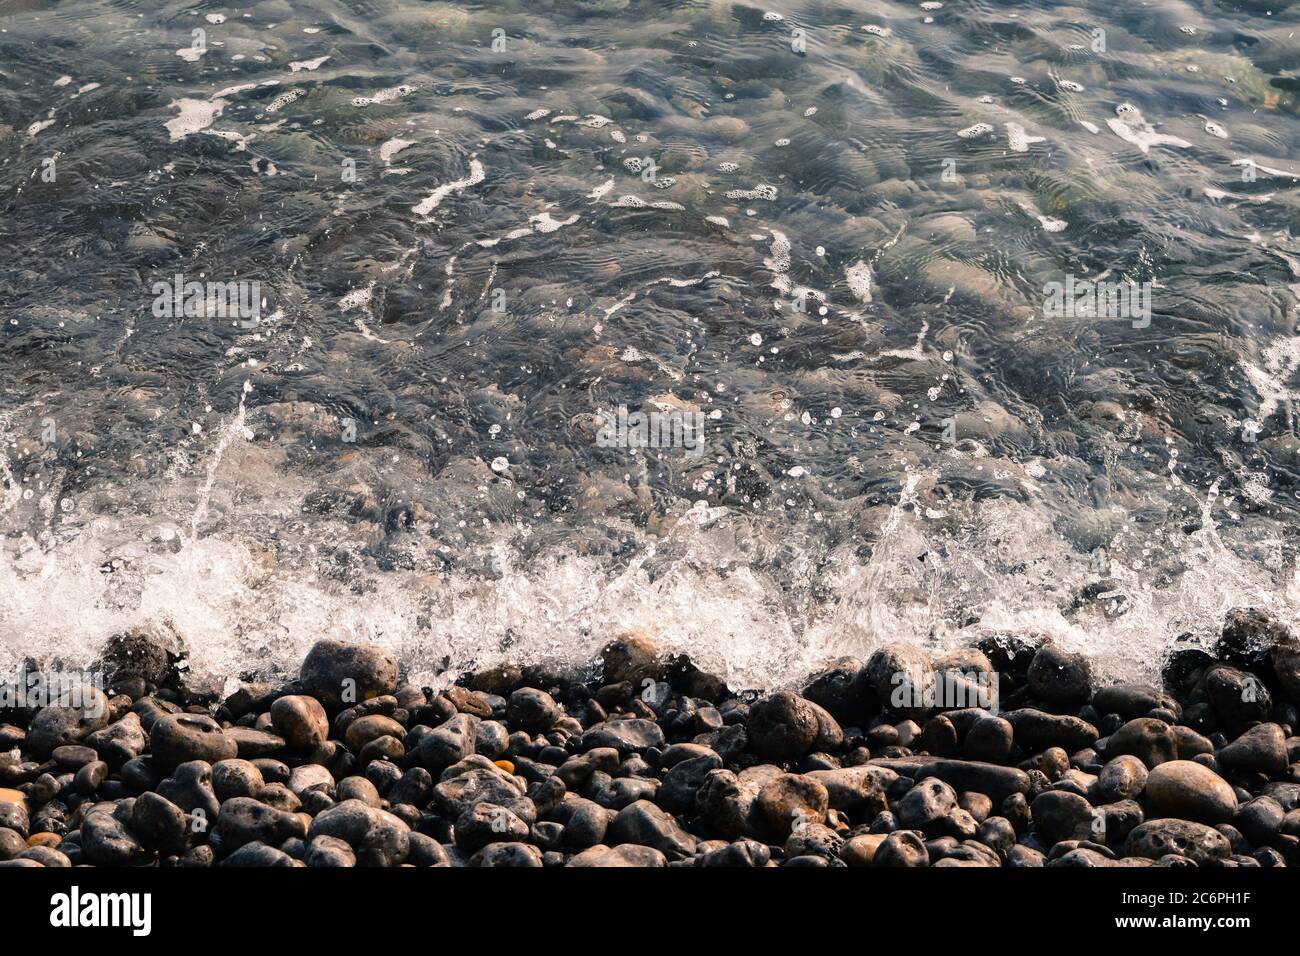 Image de fond de galets sur la plage, au bord de la mer Banque D'Images